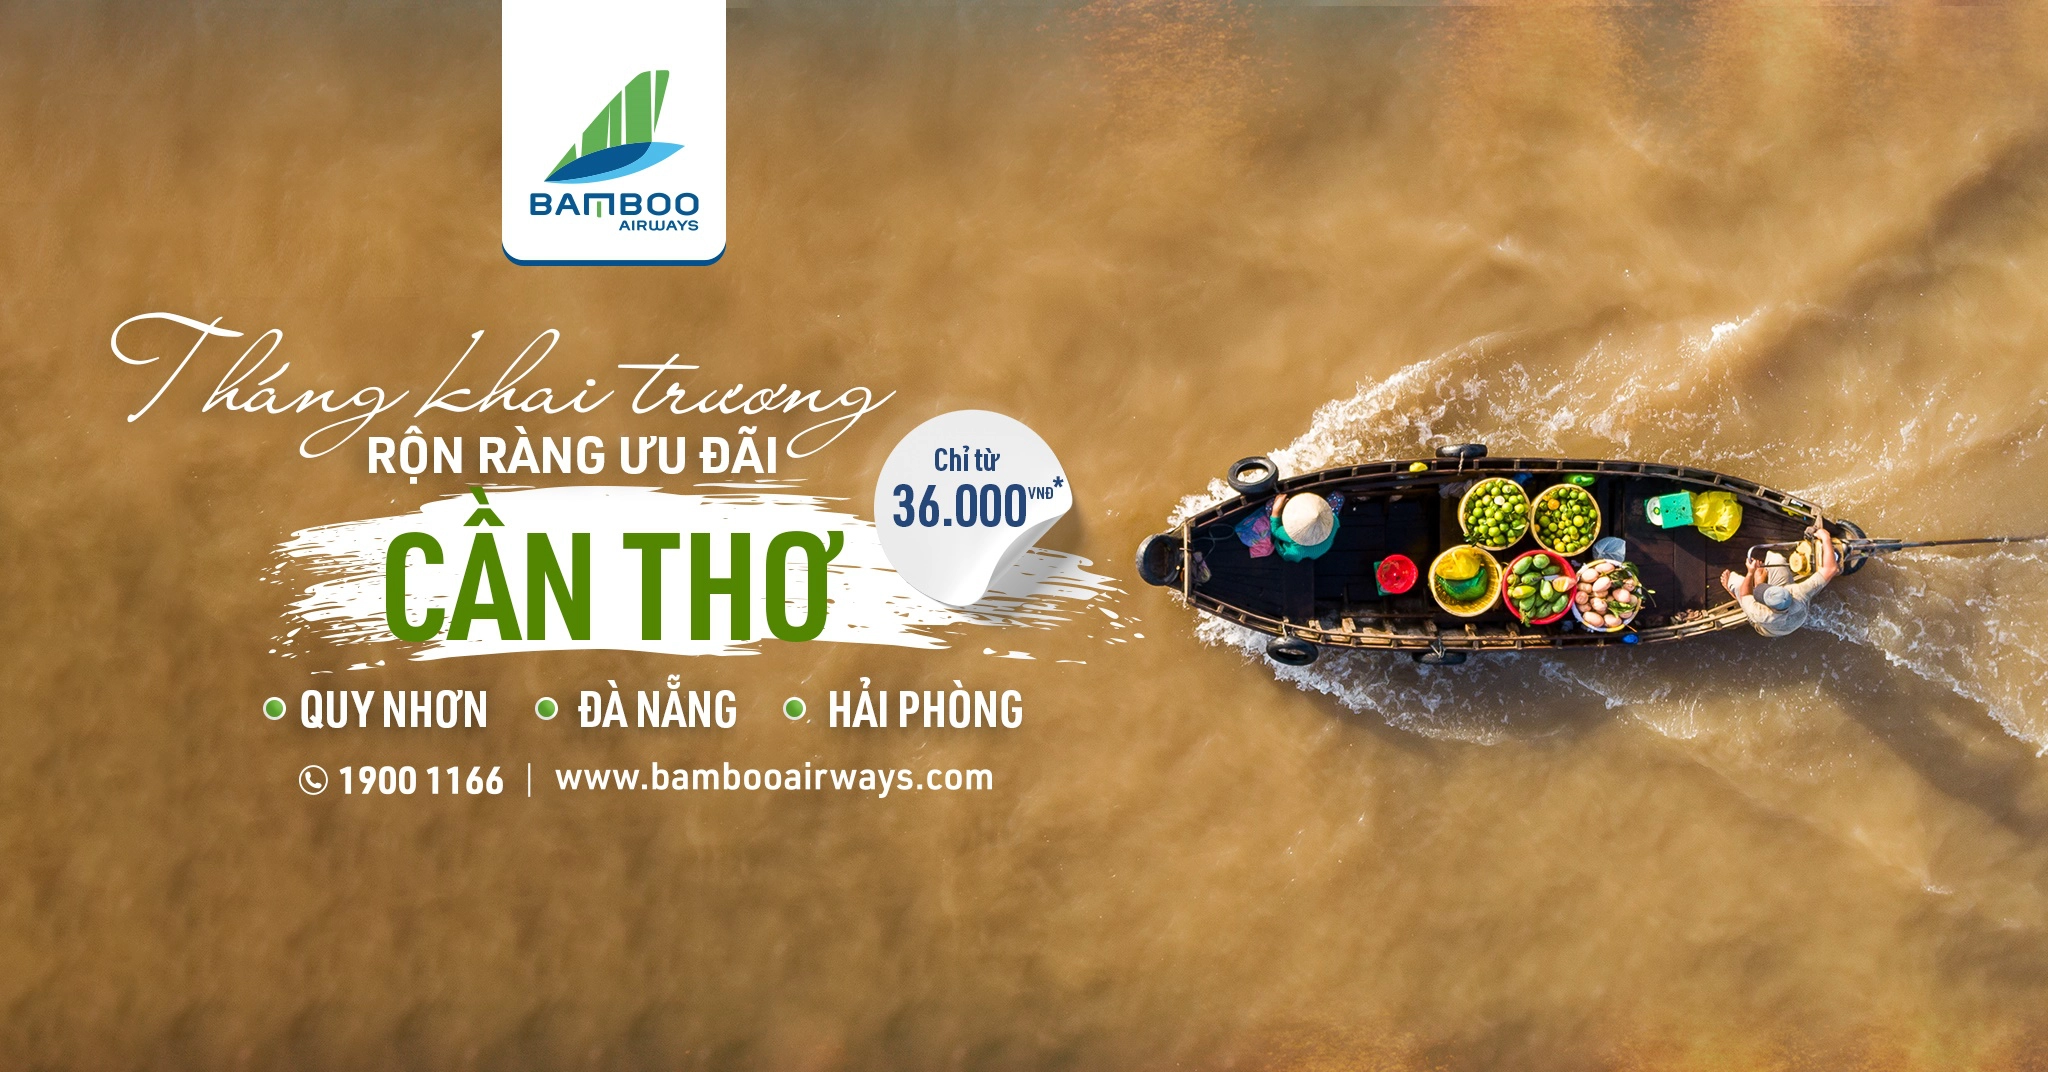 Mừng khai trương đường bay mới Bamboo Airways ưu đãi giá sốc chỉ từ 36k